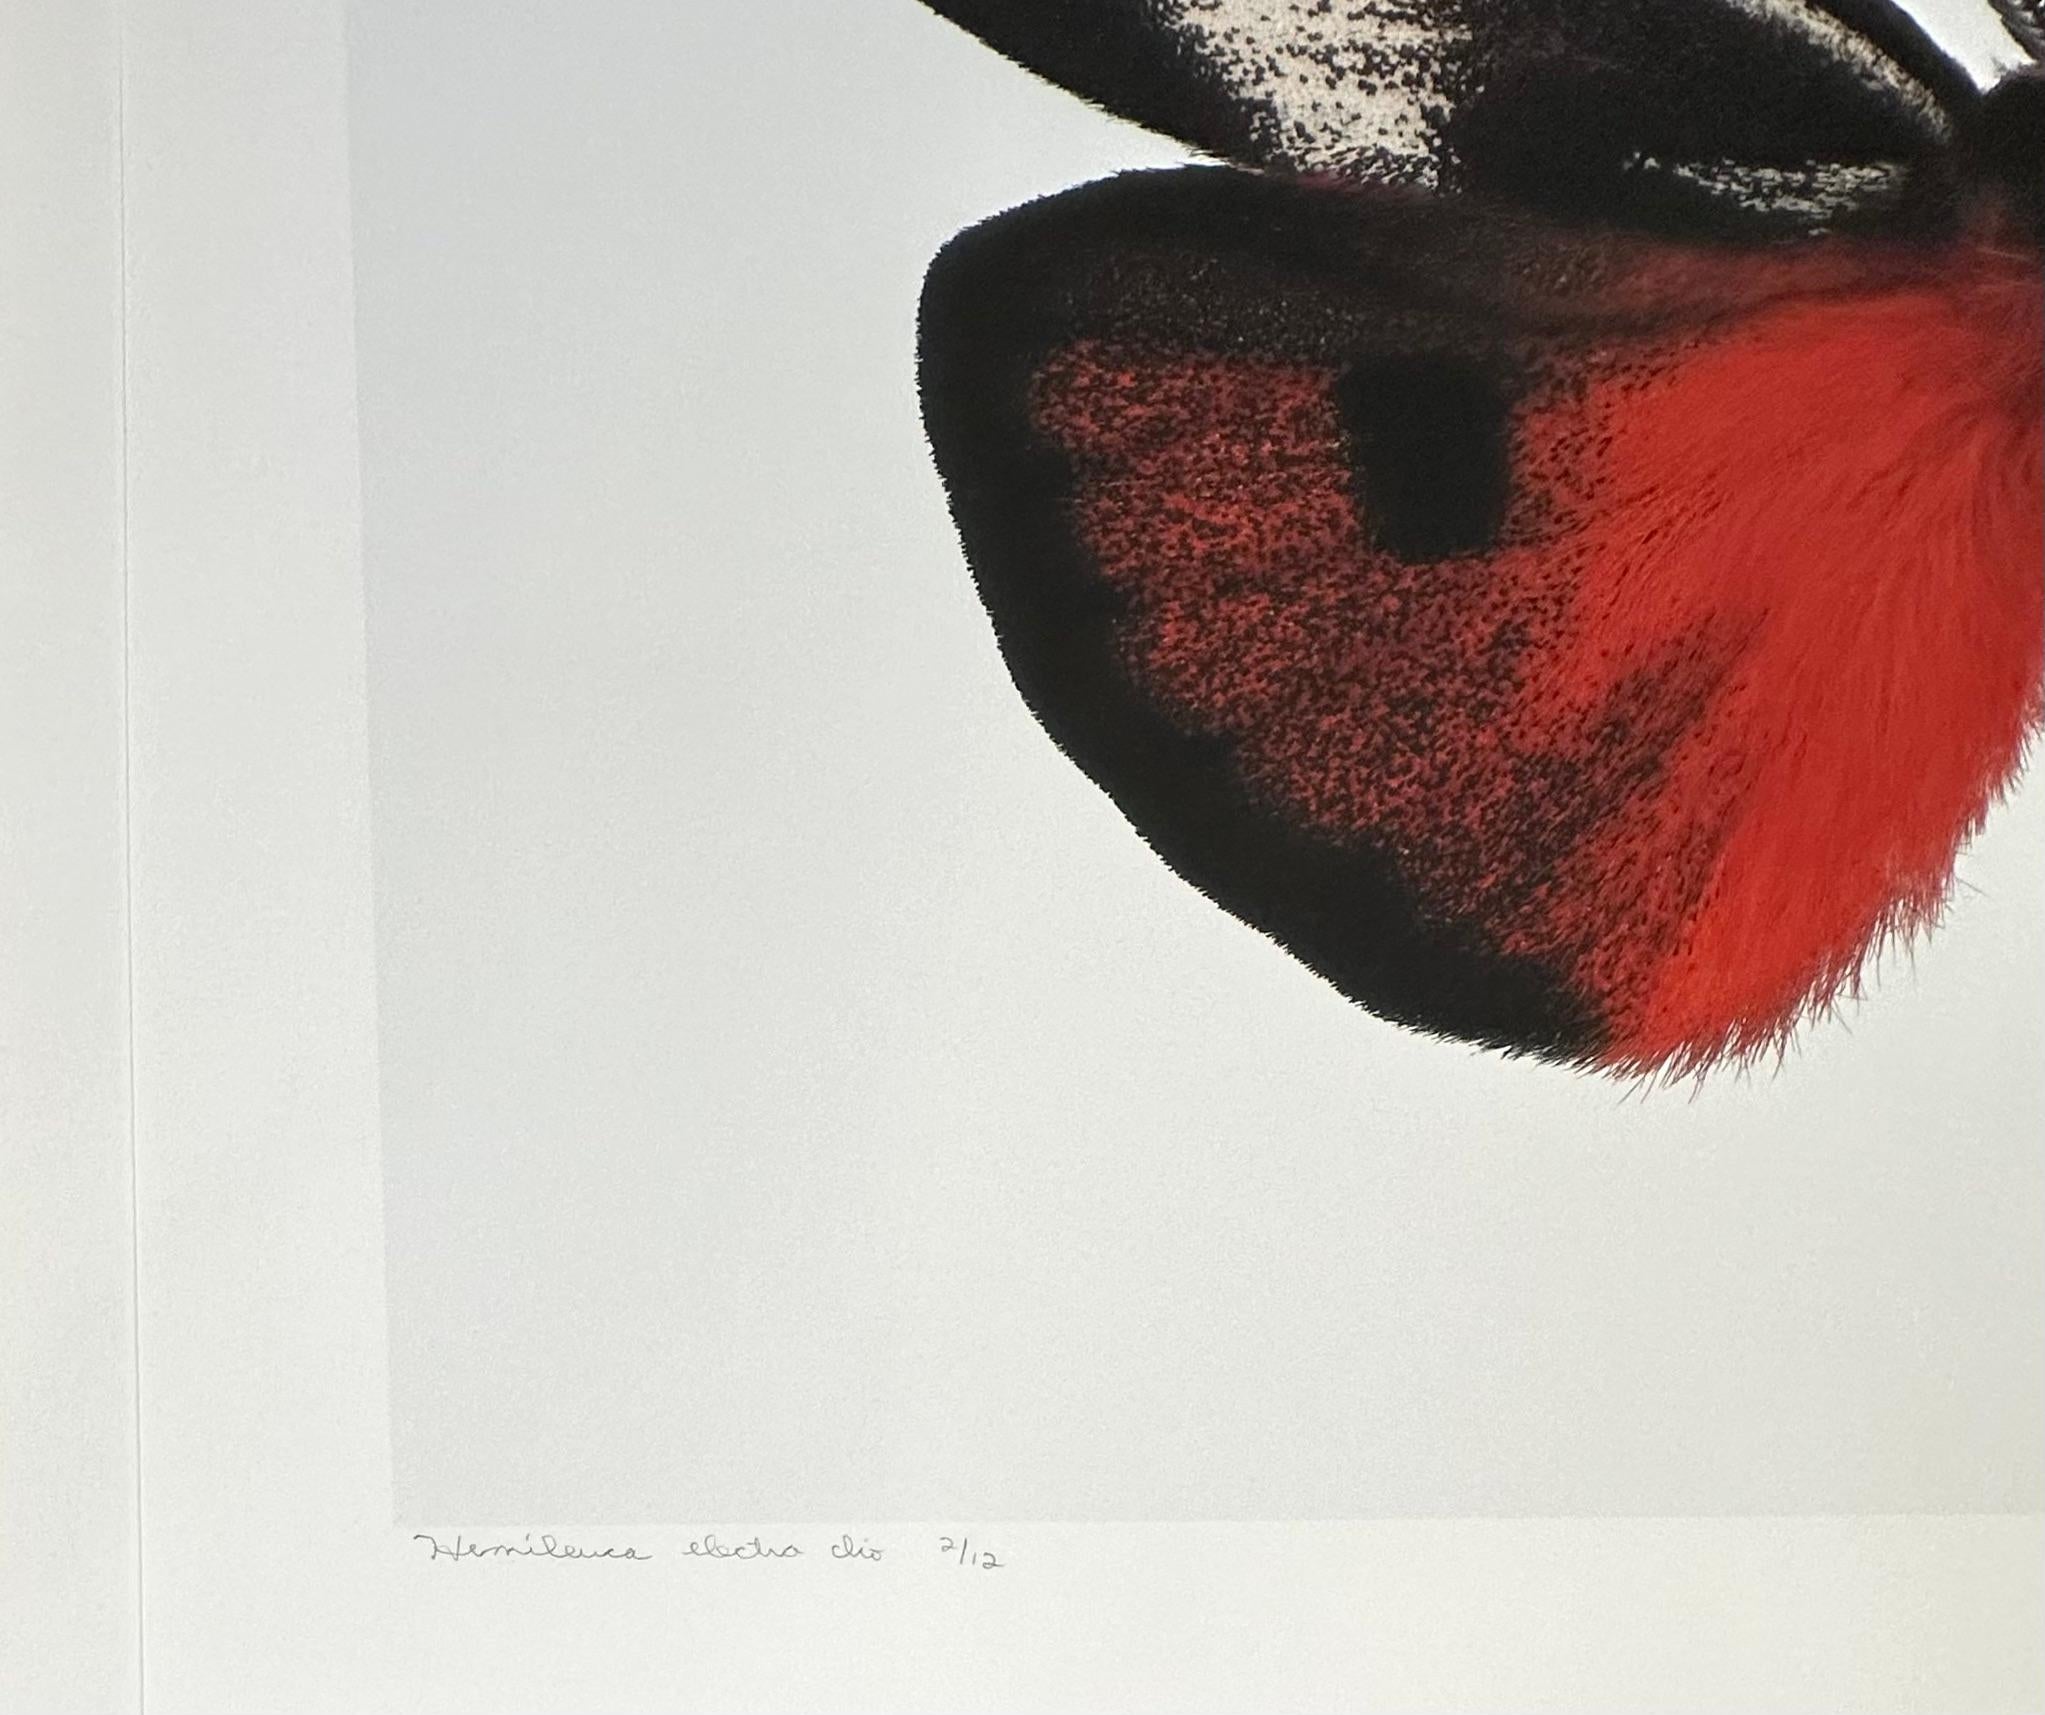 Dans cette impression pigmentaire d'archives hyper-détaillée sur papier aquarelle, un papillon de nuit orange rouge cramoisi brillant avec des marques circulaires blanches, noires et jaunes sur ses ailes se détache de façon spectaculaire sur un fond